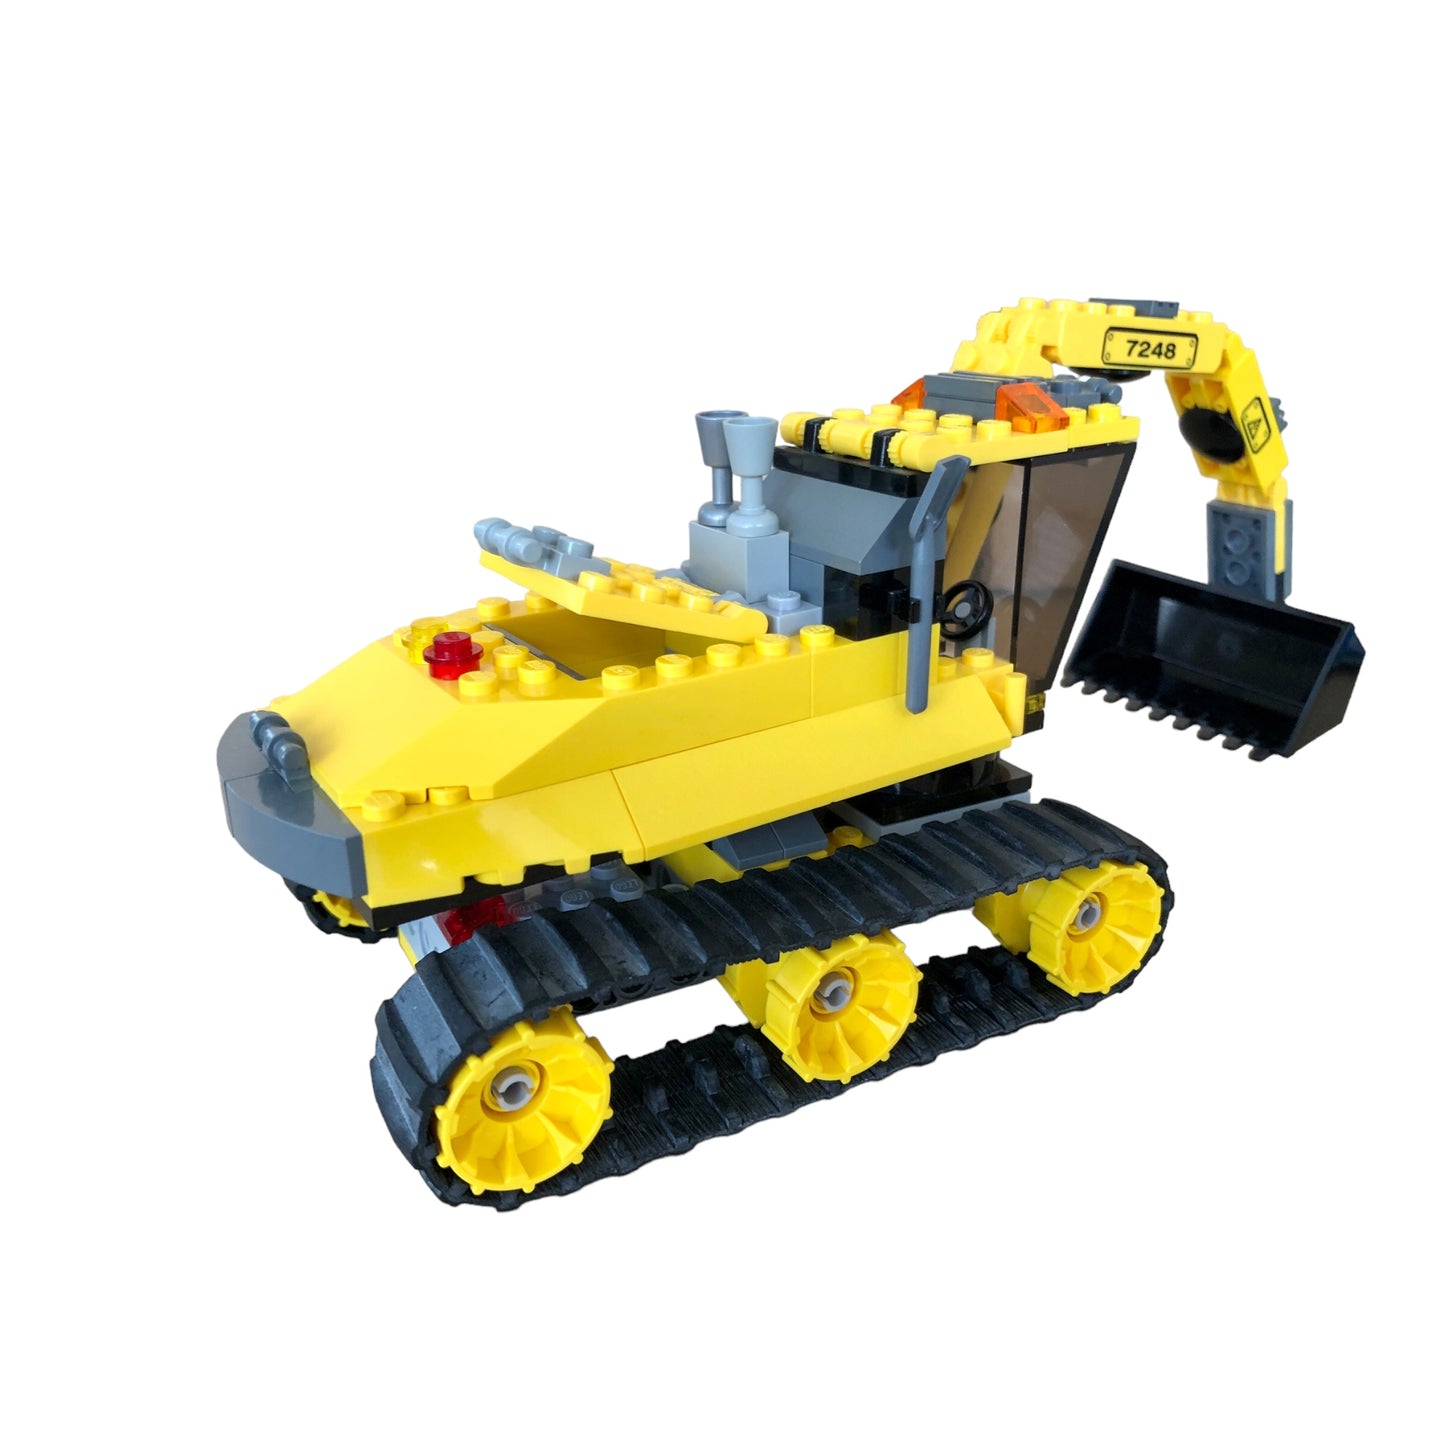 LEGO ® City 7248 - Digger Set